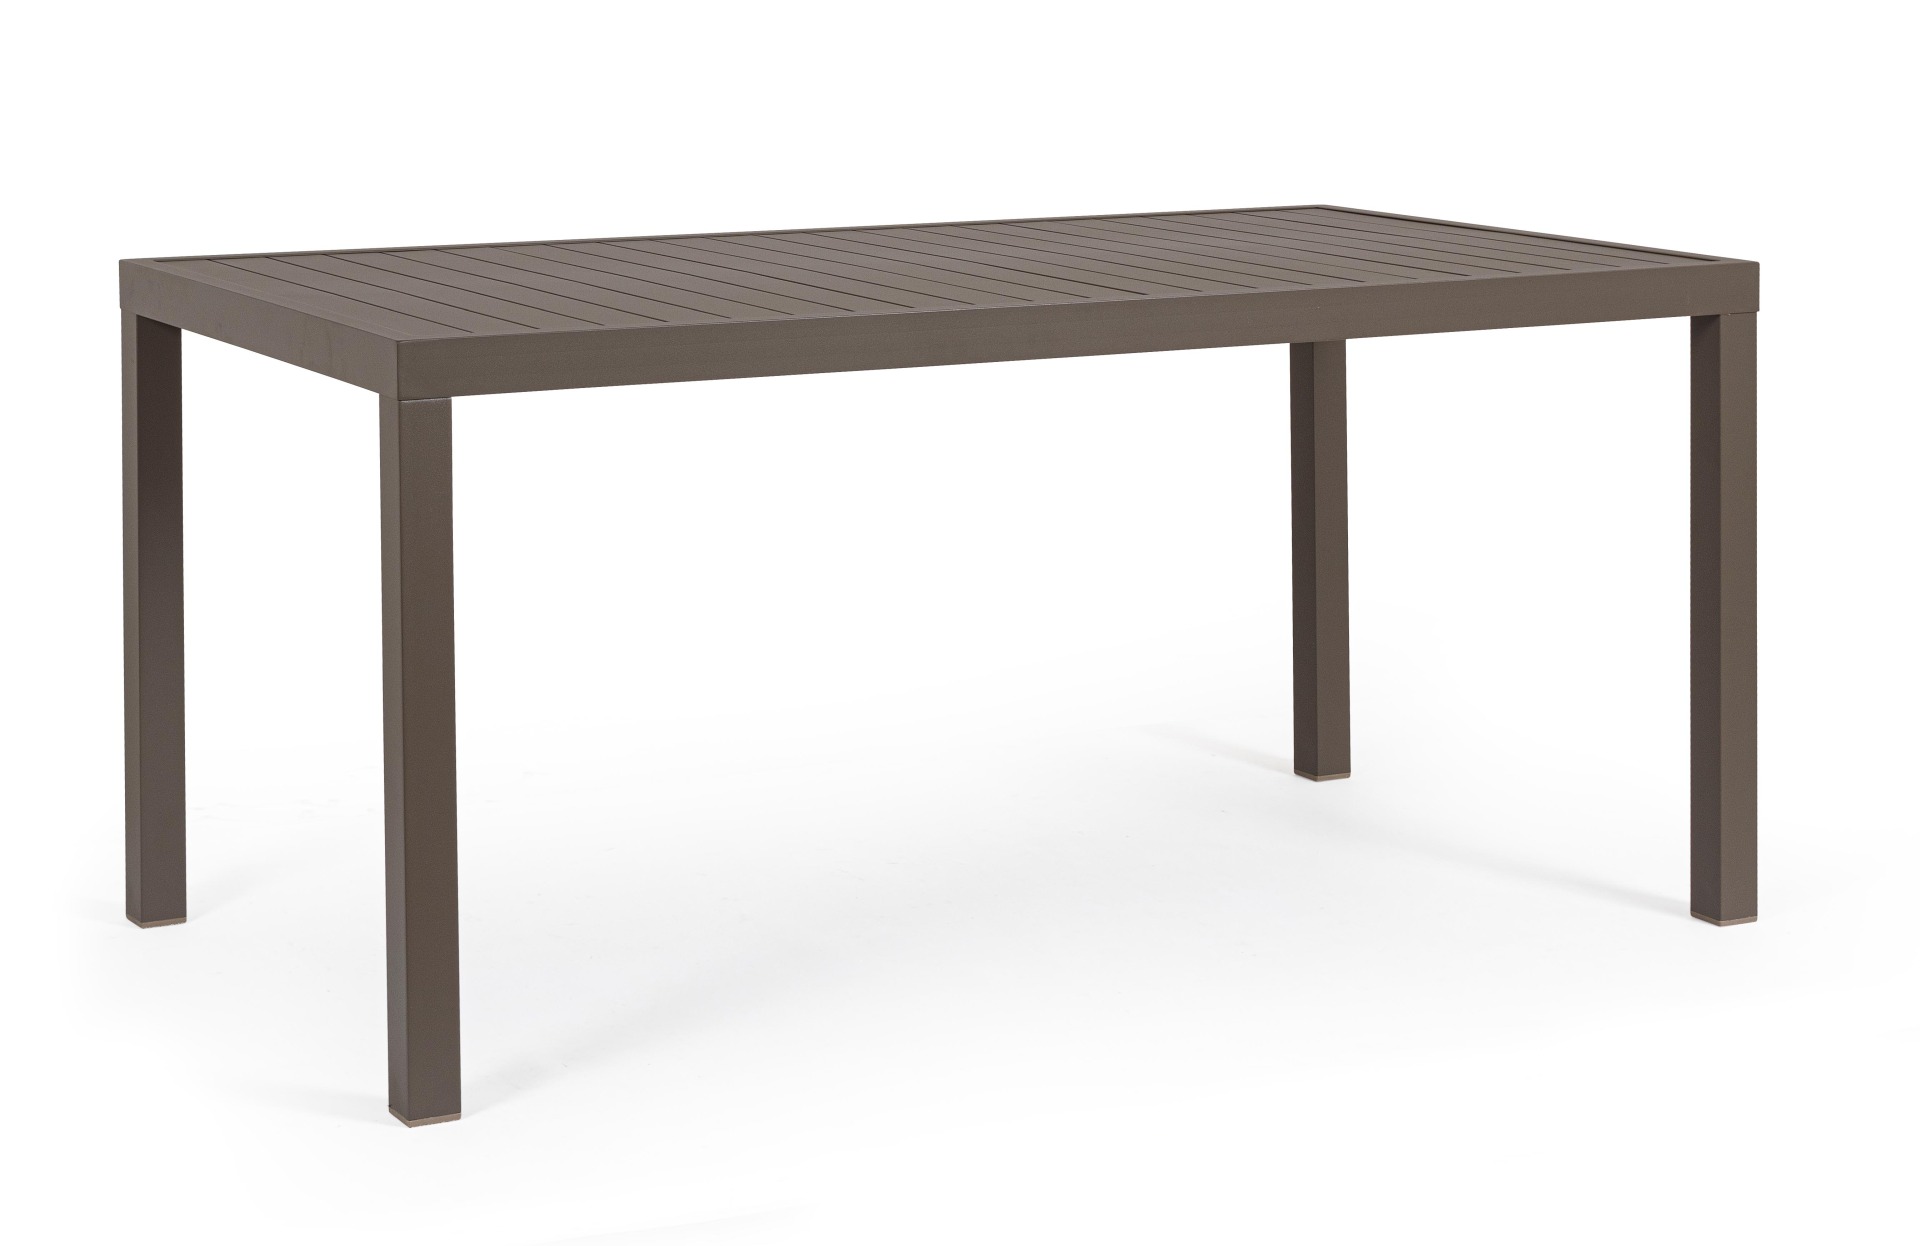 Der Gartentisch Hilde überzeugt mit seinem modernen Design. Gefertigt wurde er aus Aluminium, welches einen braunen Farbton besitzt. Das Gestell ist aus auch Aluminium und hat eine braune Farbe. Der Tisch verfügt über eine Länge von 150 cm und ist für den